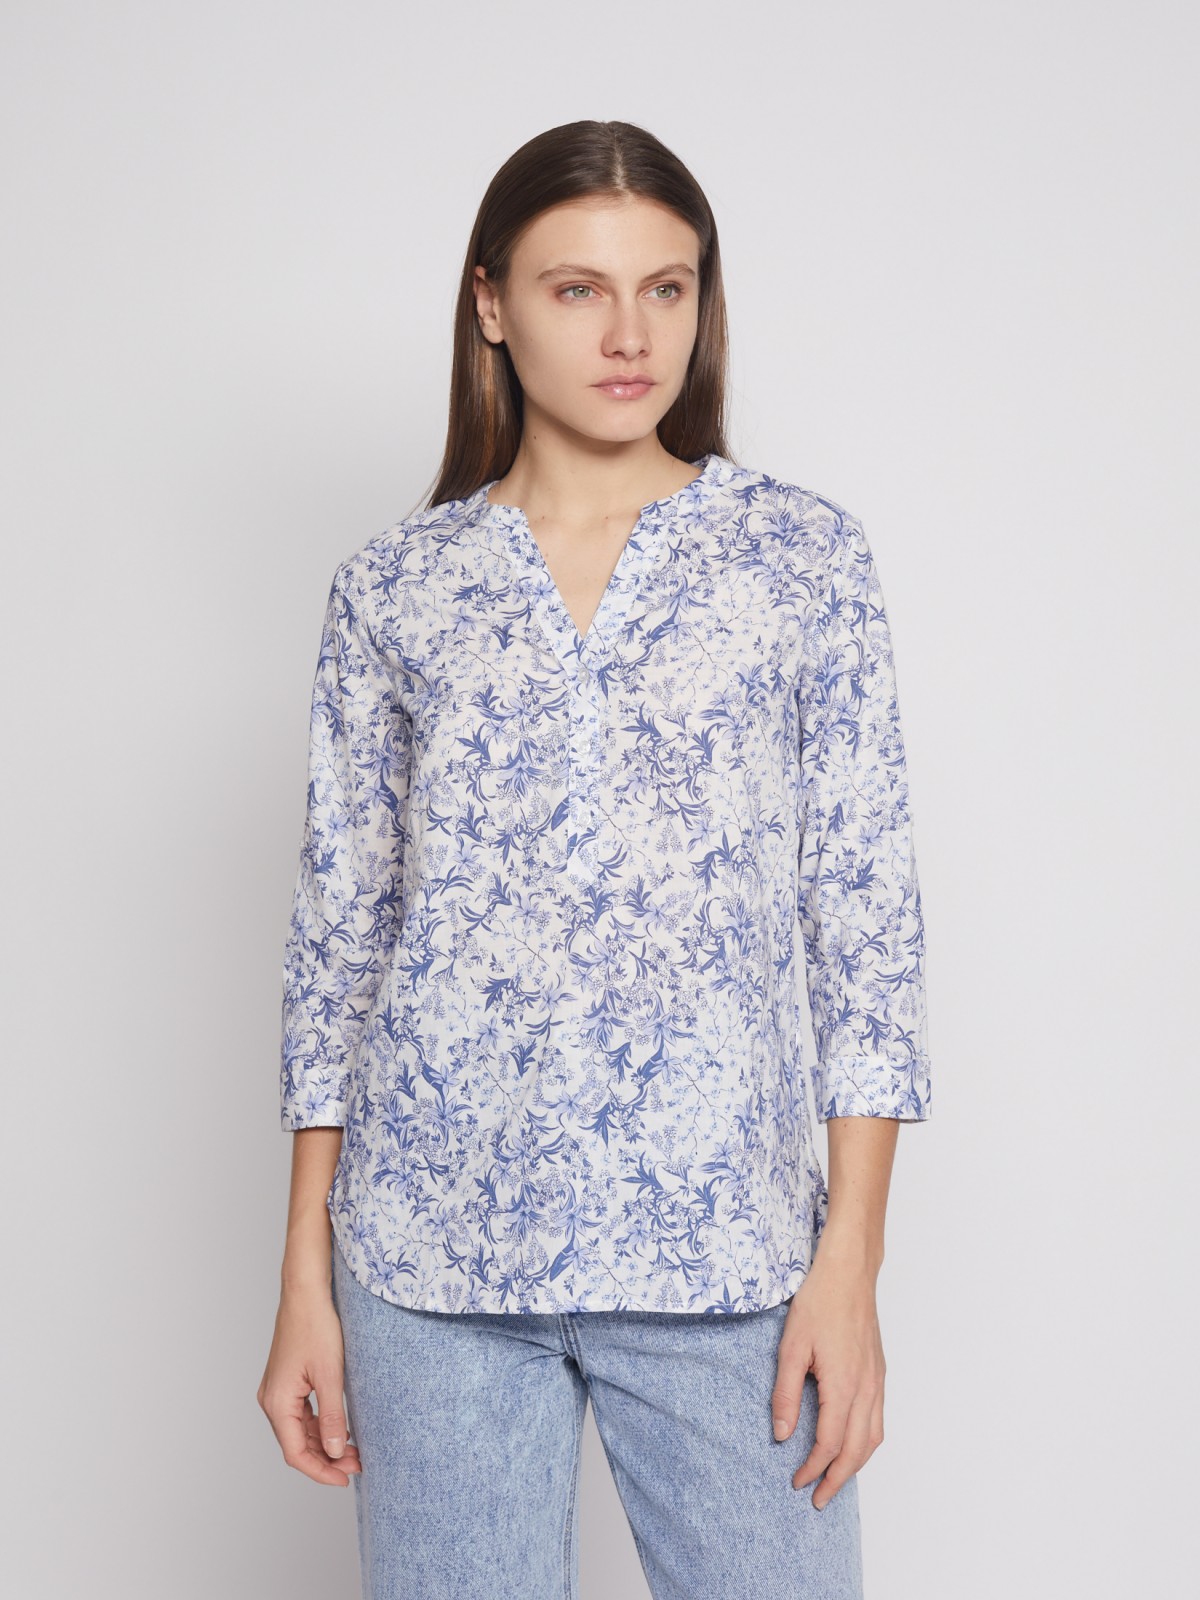 Блузка с  длинными рукавами zolla 022241147053, цвет светло-голубой, размер S - фото 1